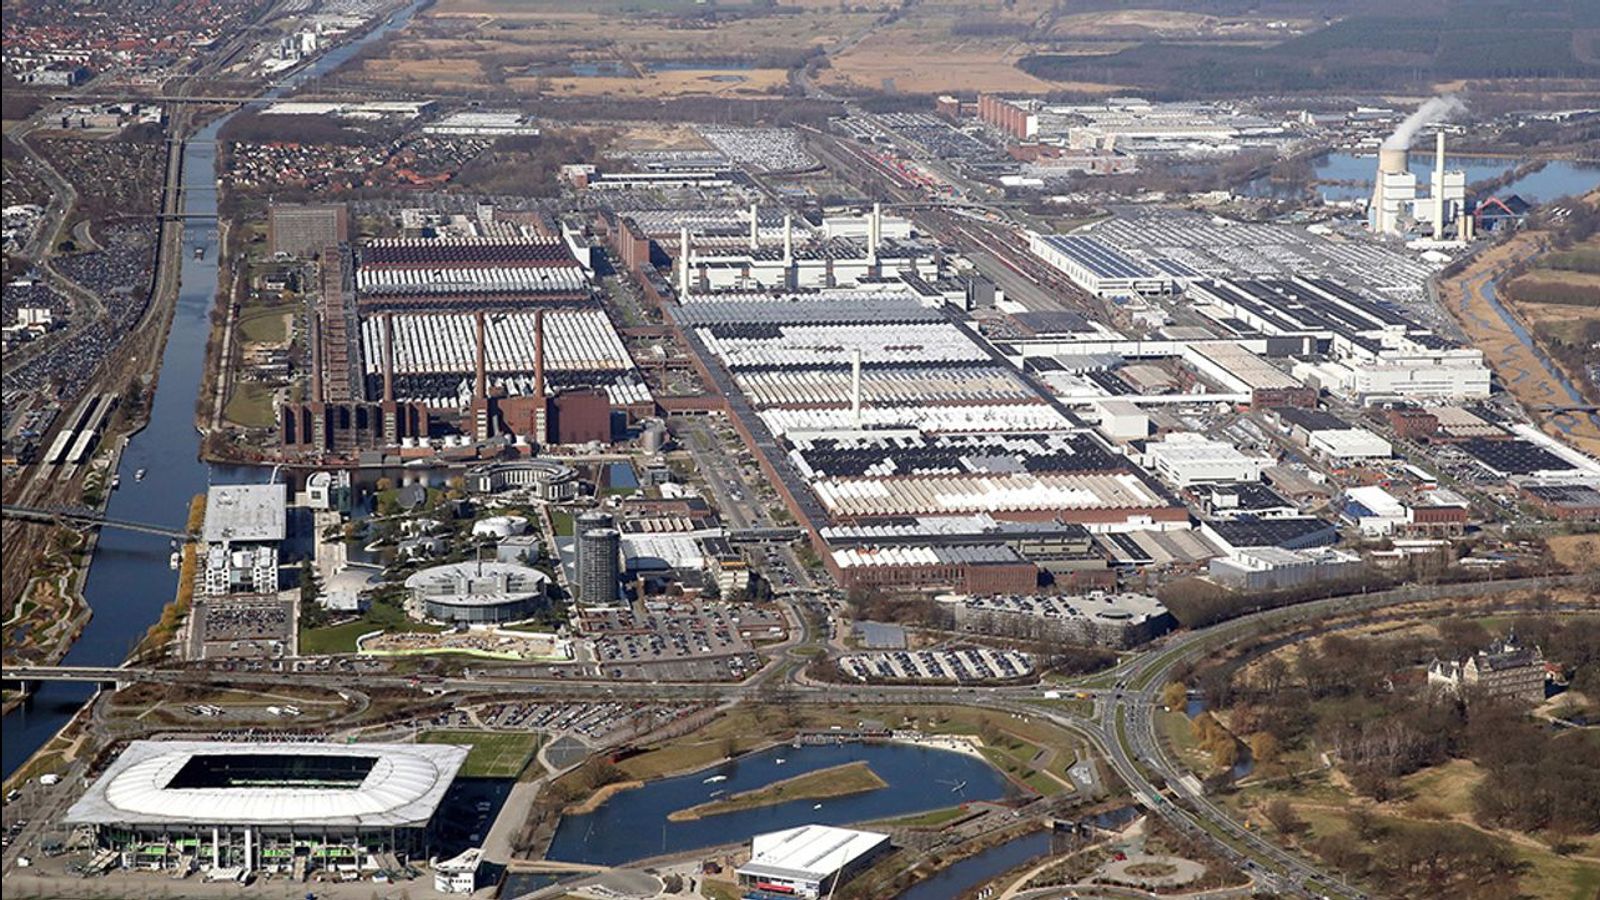 Une réunion d’usine Volkswagen à Wolfsburg annonce de violents conflits avec les salariés